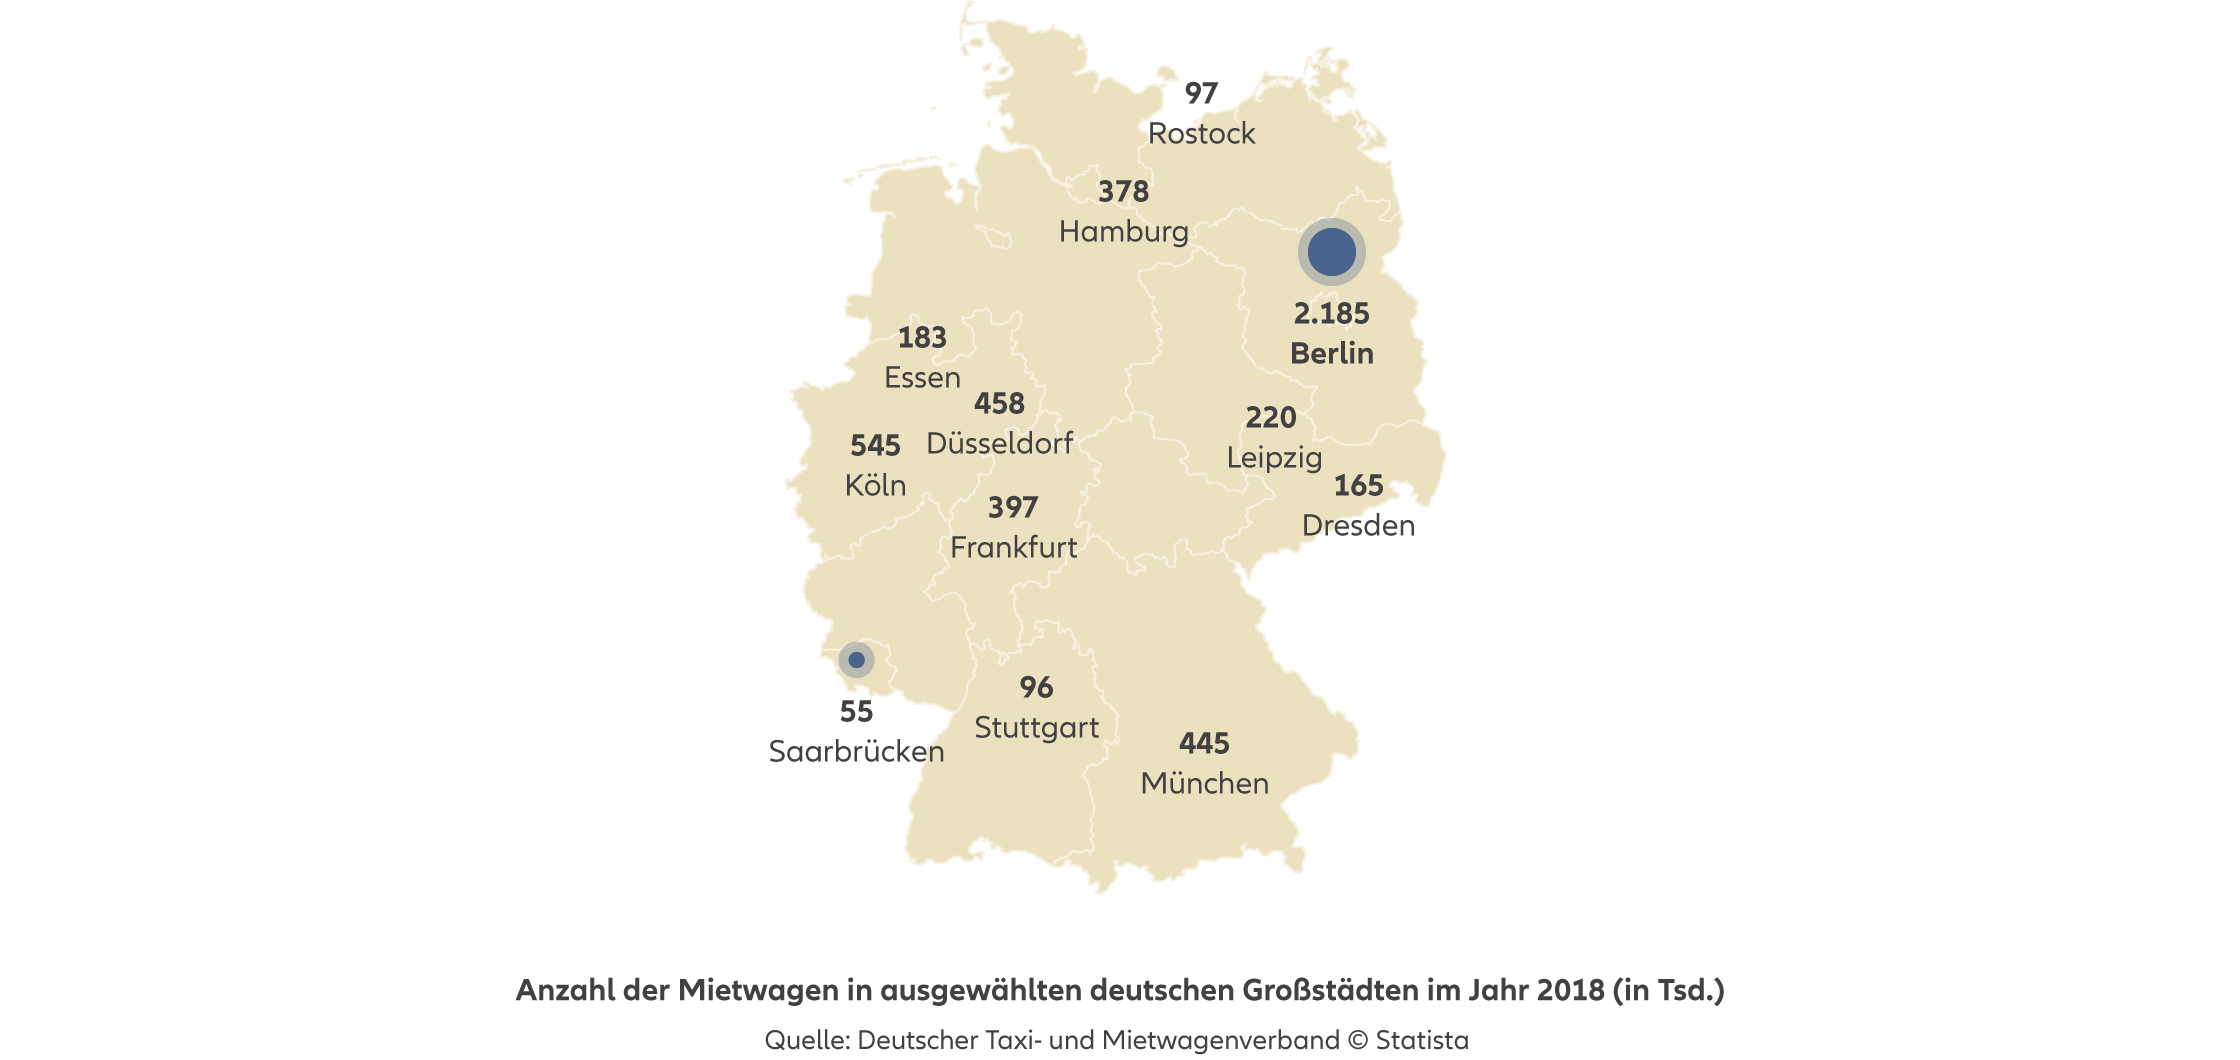 Agentursuche Privat-Haftpflichtversicherung Berlin - Anzahl der Mietwagen in ausgewählten deutschen Großstädten im Jahr 2018 (in Tsd.)